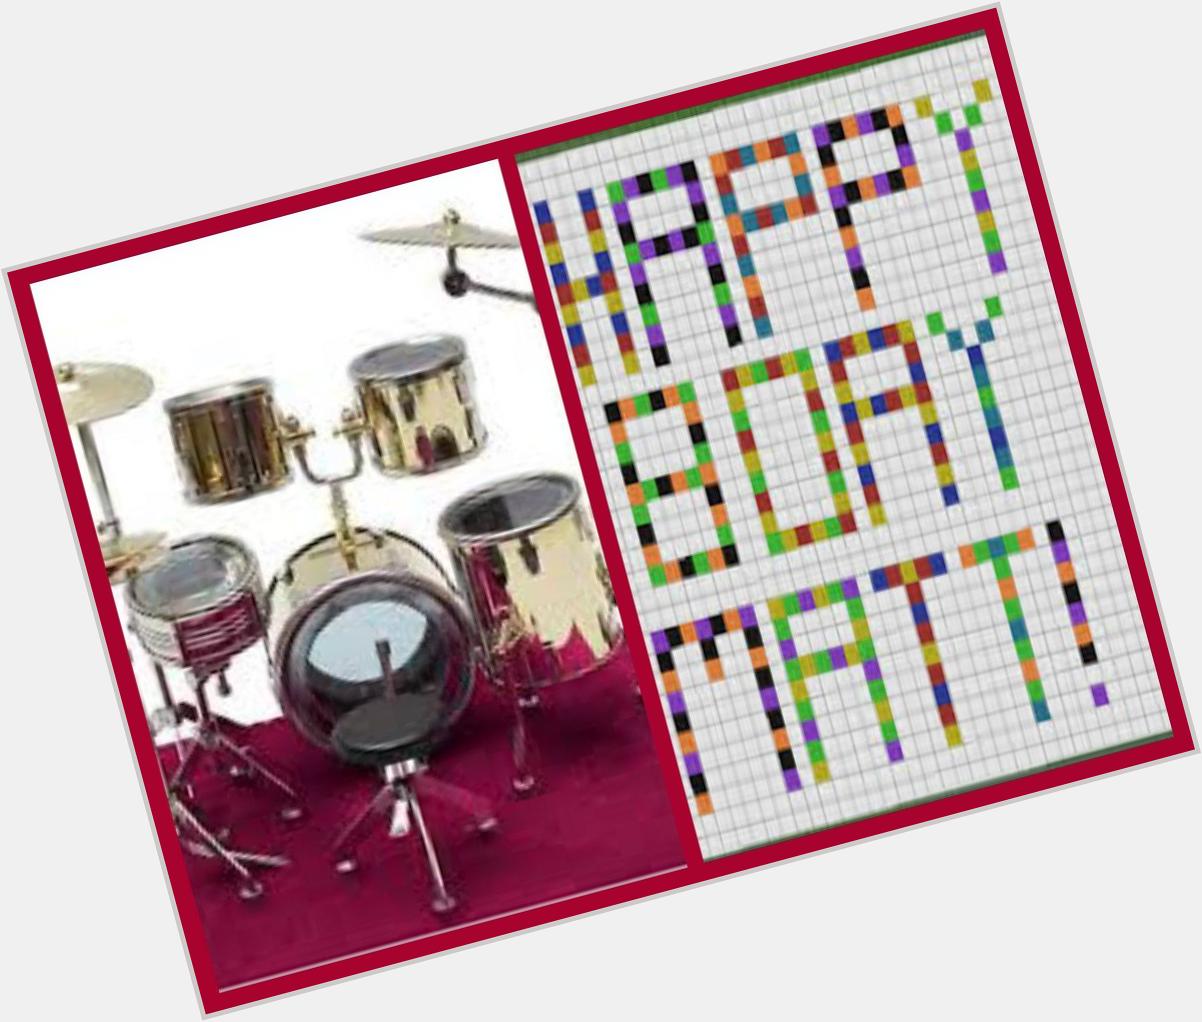 Happy birthday, Matt Flynn, the great drummer of !!!! 